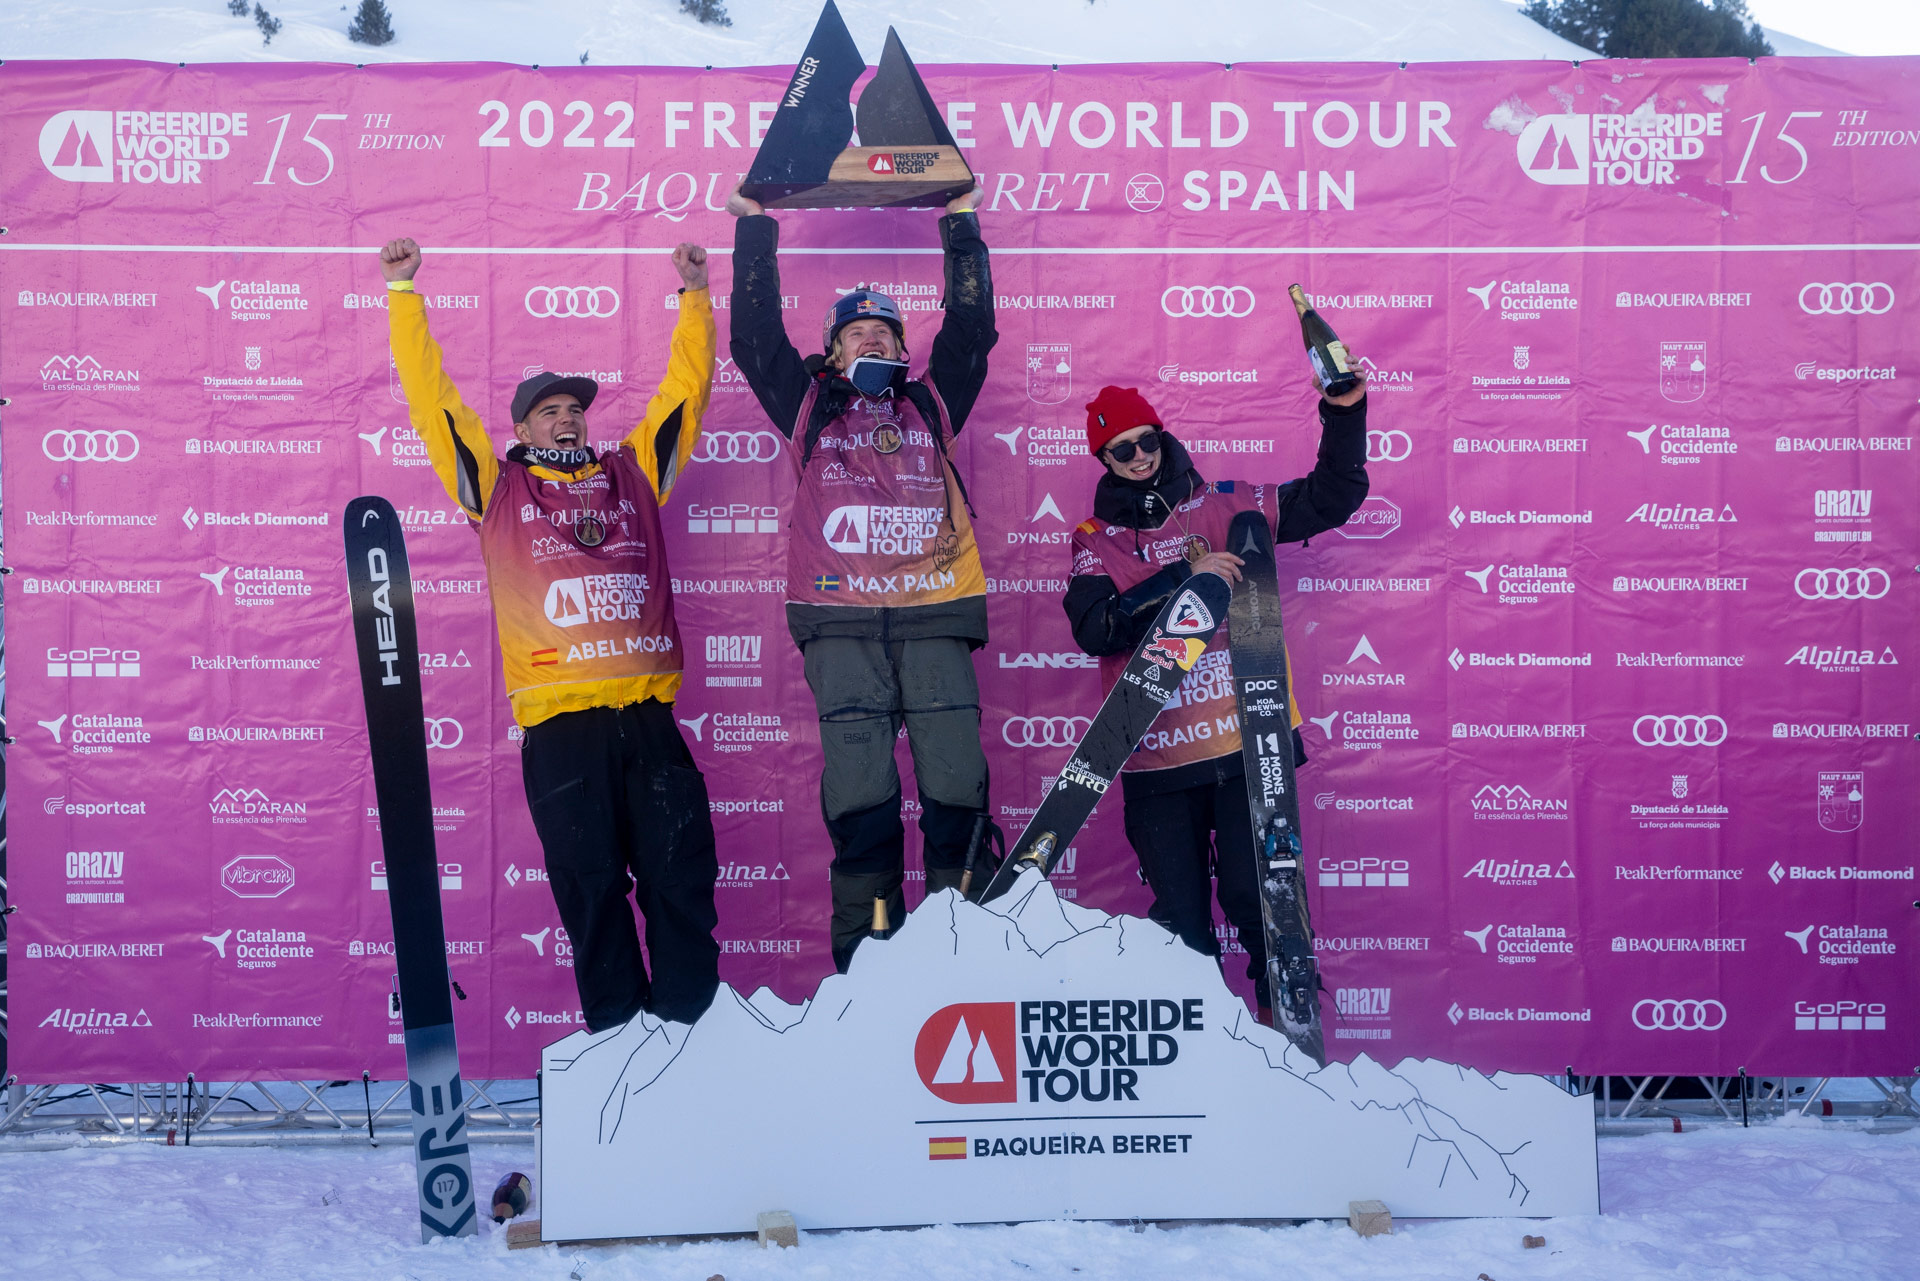 The Men's Ski podium at the 2022 Freeride World Tour event in Baqueria Beret, Spain.